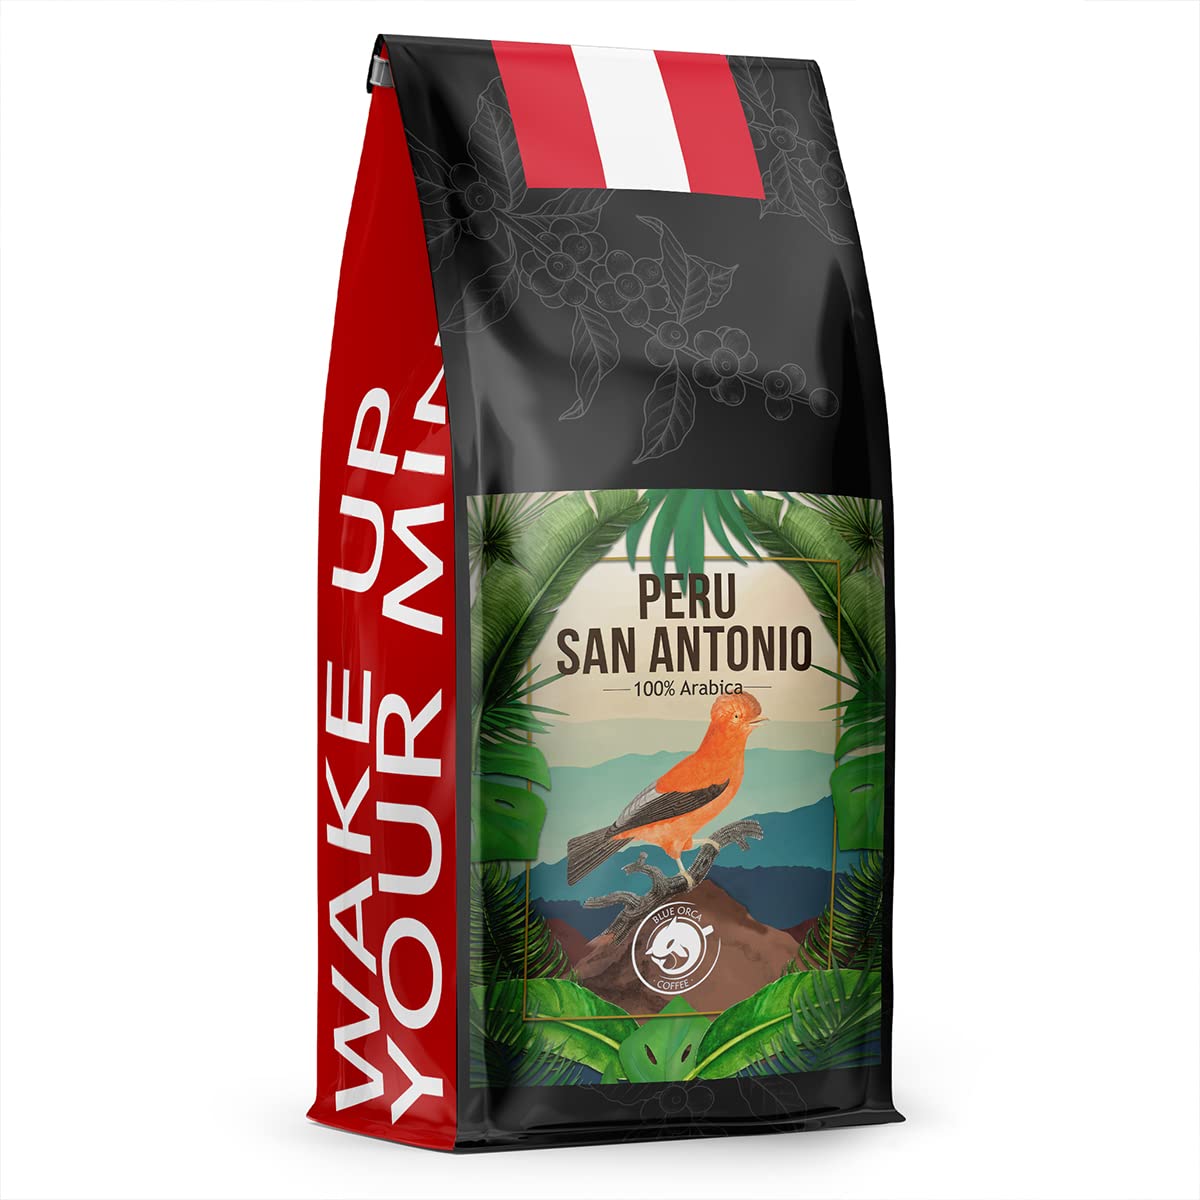 Blue Orca Coffee - PERU SAN ANTONIO - Specialty Kaffeebohnen aus Peru San Antonio - Frisch geröstet - Single Origin - SCA 82 Punkte, 1 kg
